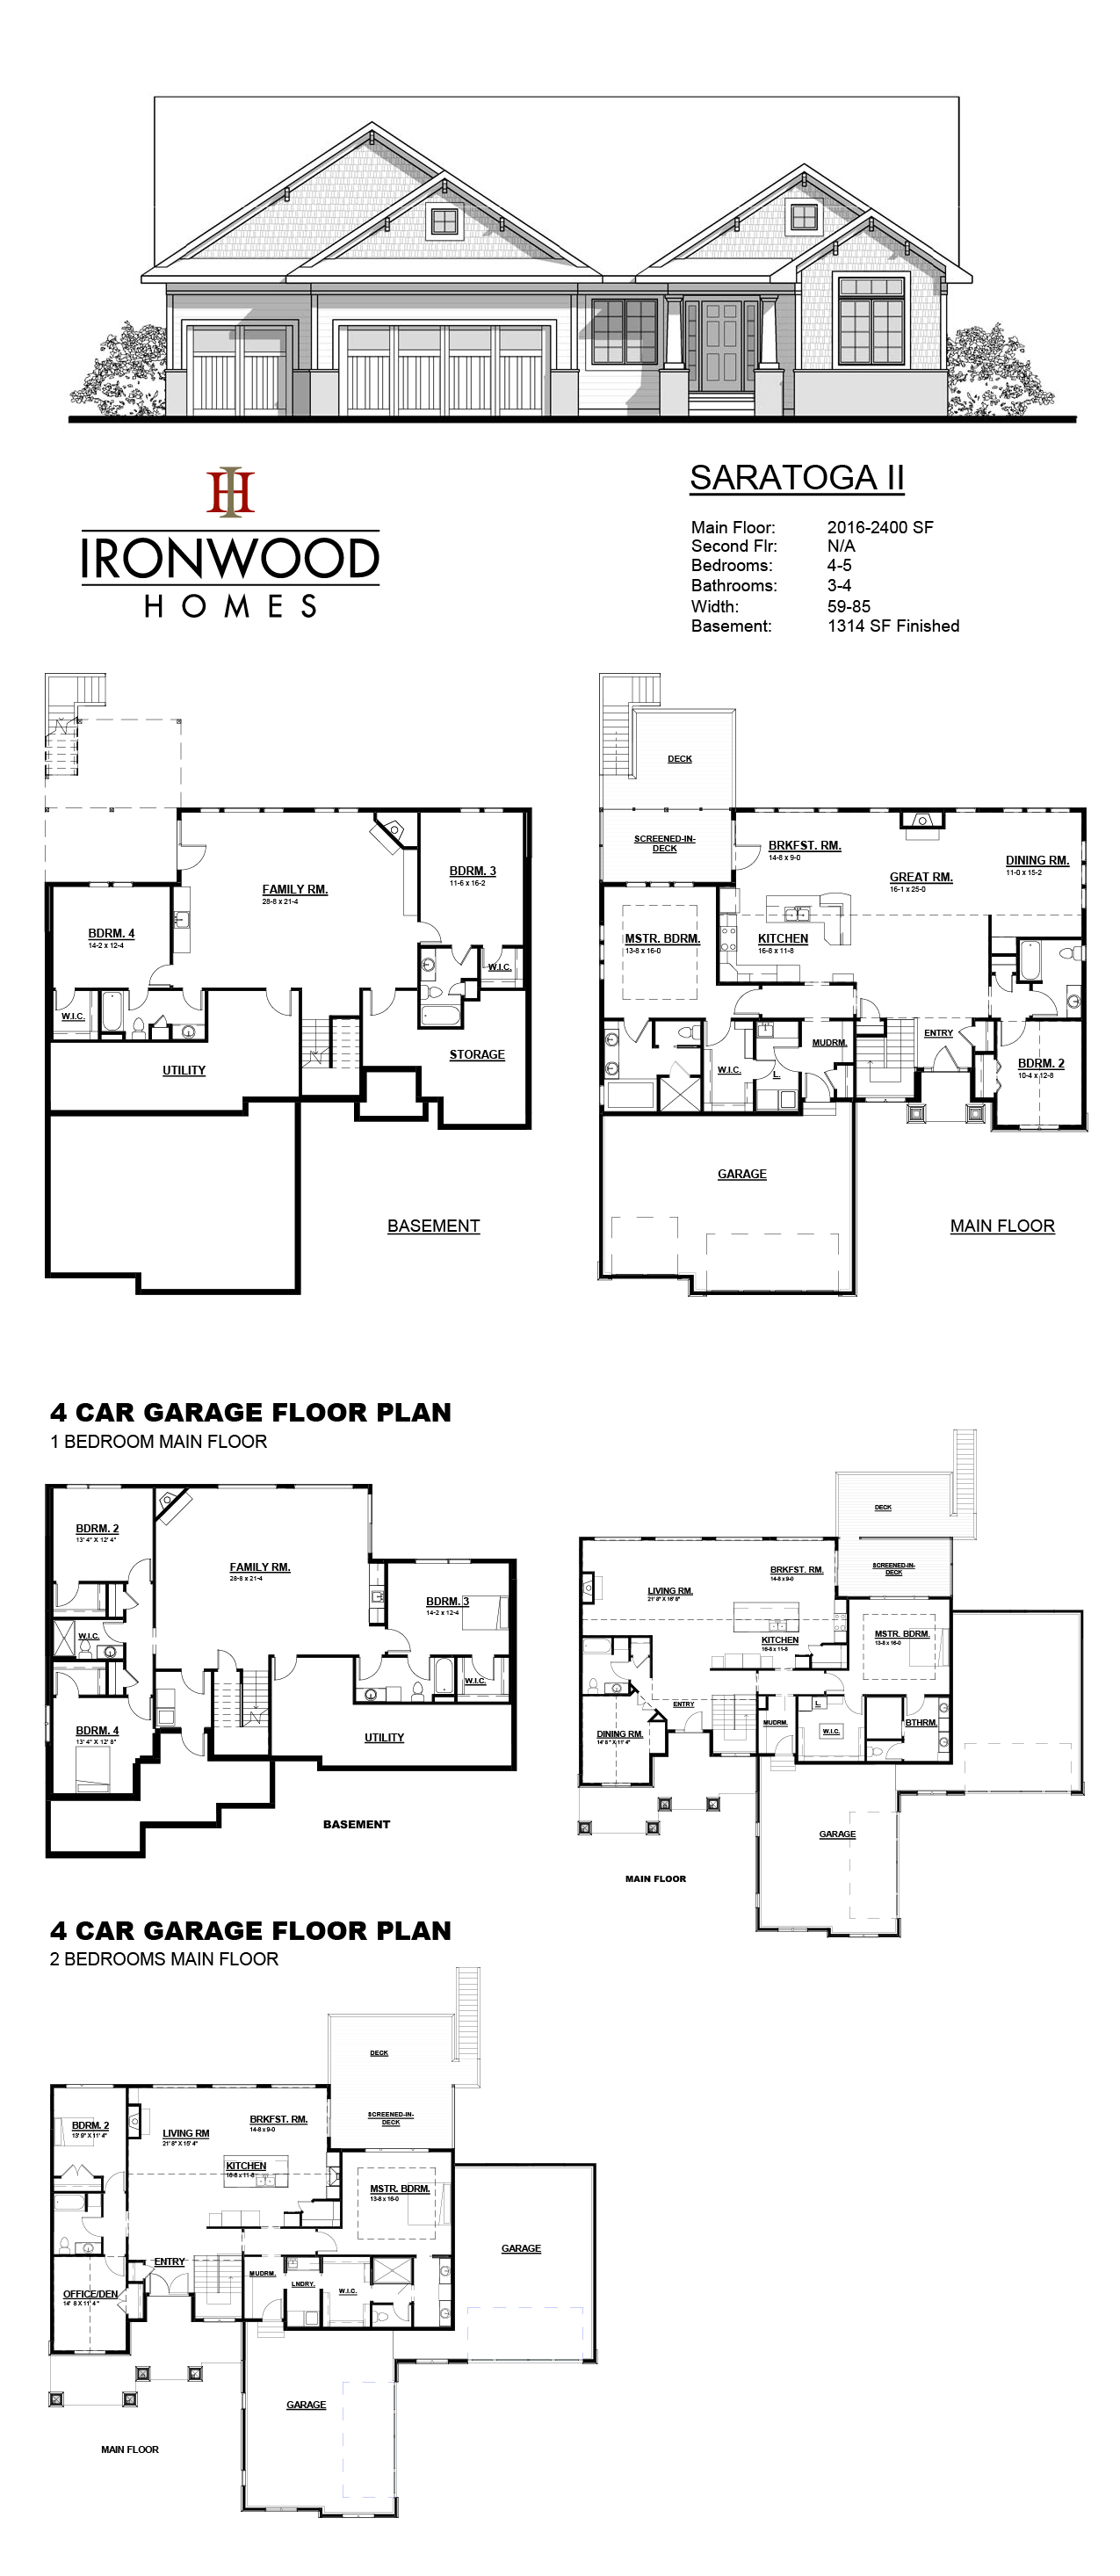 Saratoga II floor plan sheet